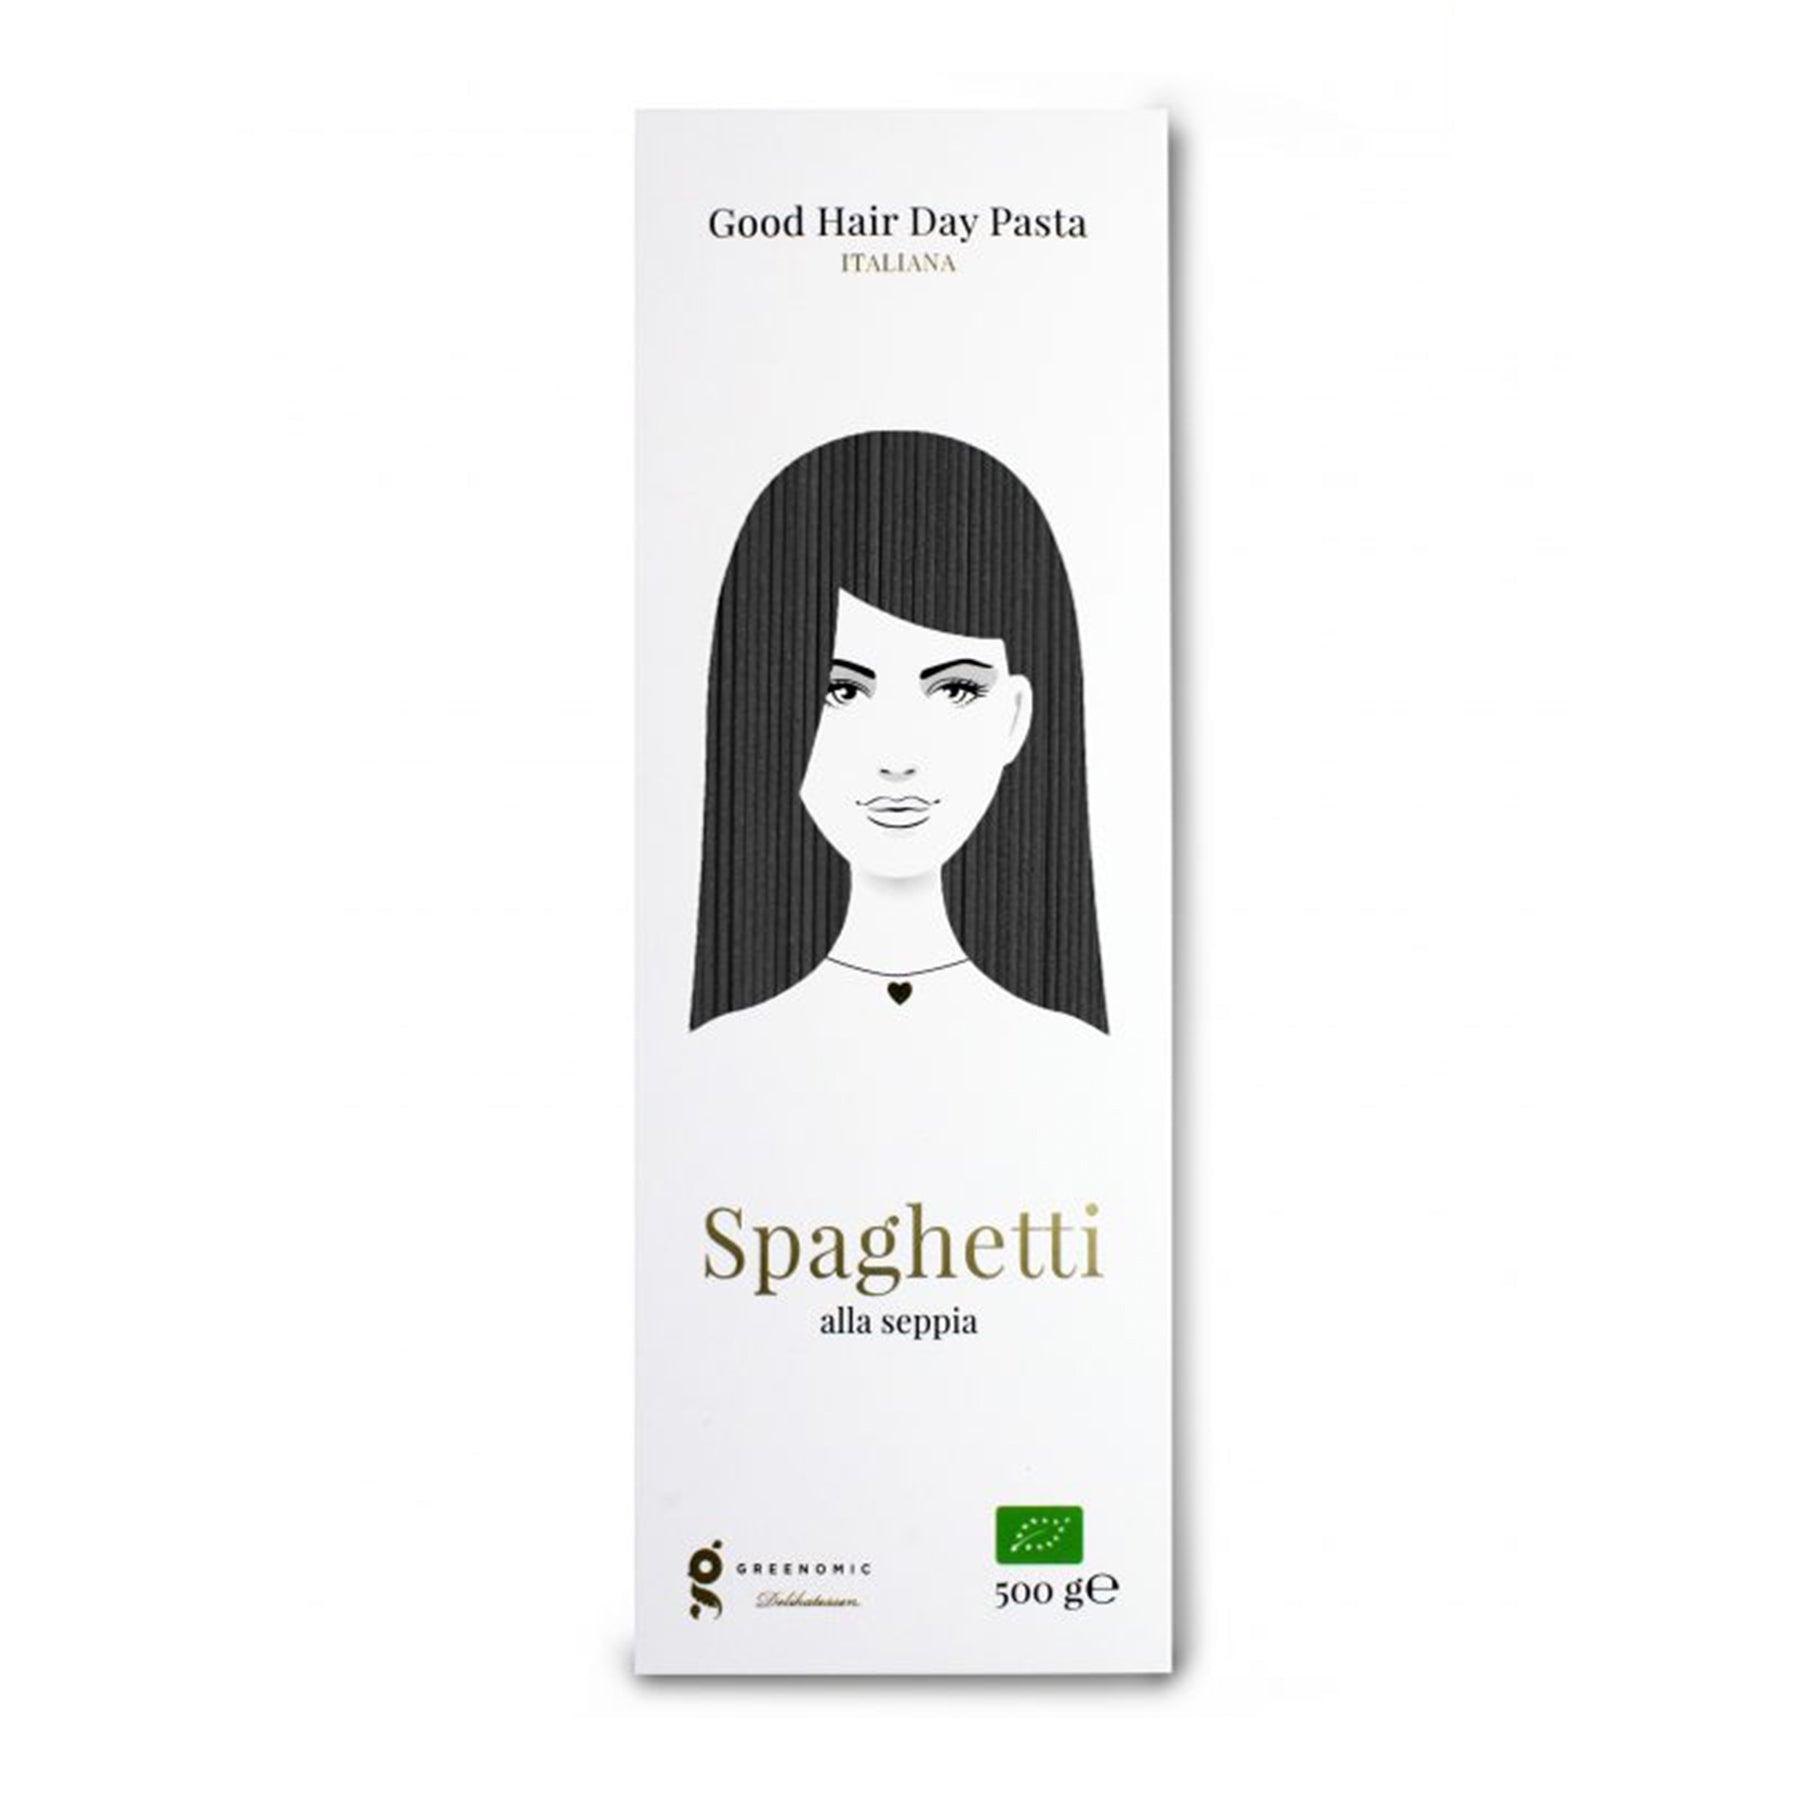 Spaghetti alla Seppia BIO - Good Hair Day Pasta - Genussbote